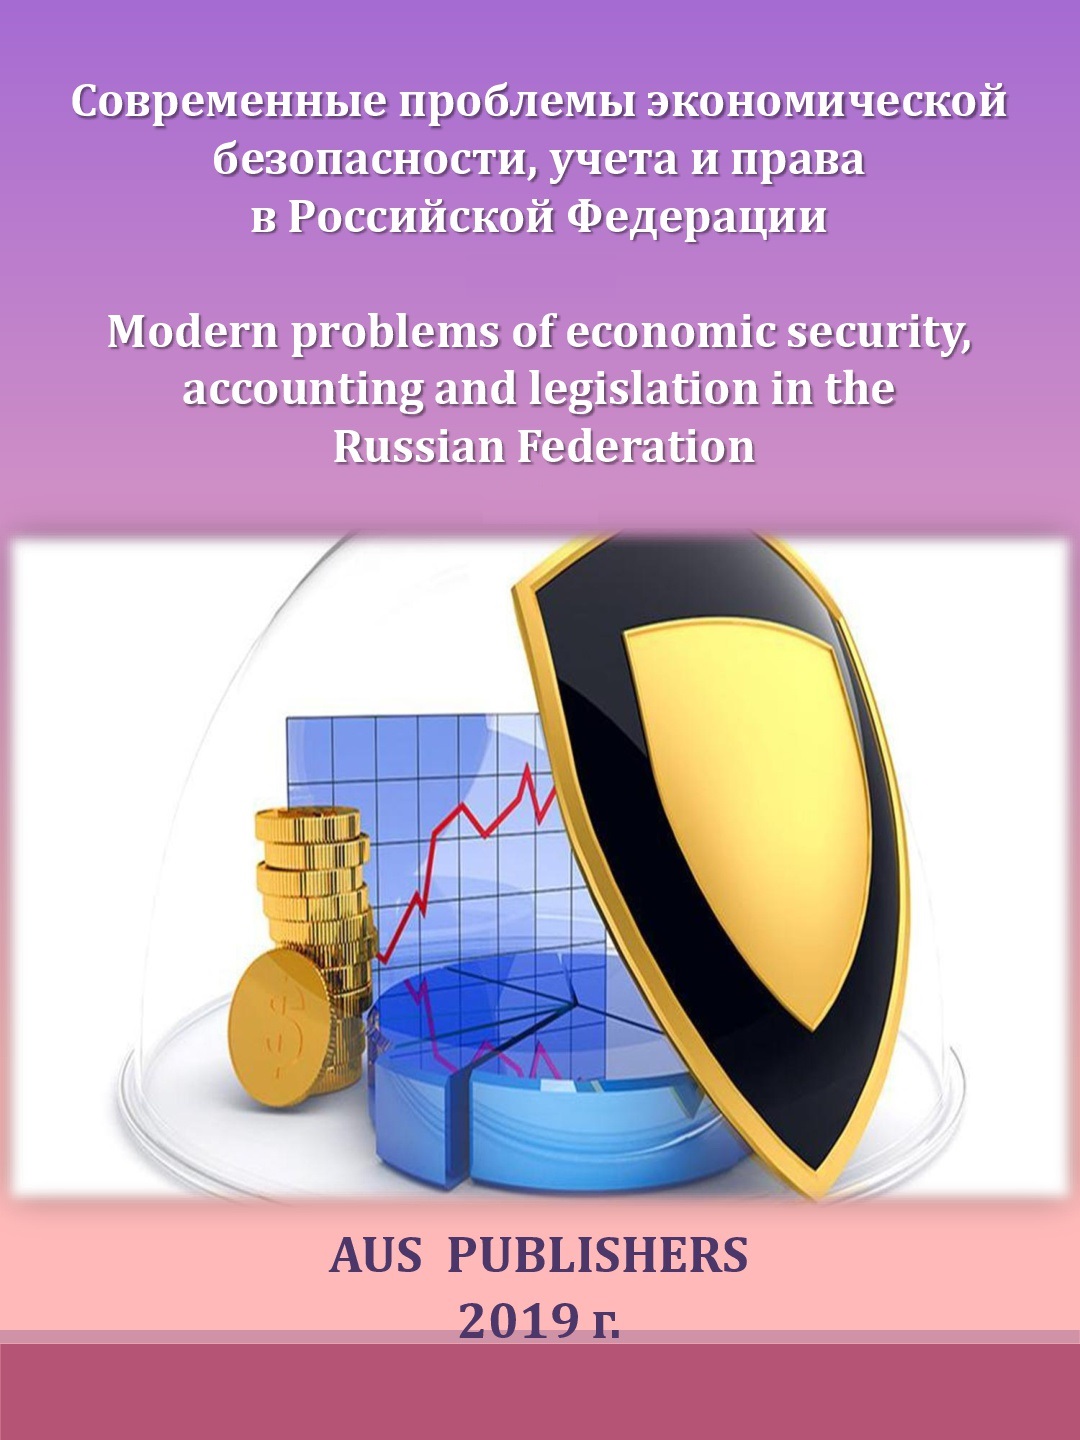             Современные проблемы экономической безопасности, учета и права в Российской Федерации
    